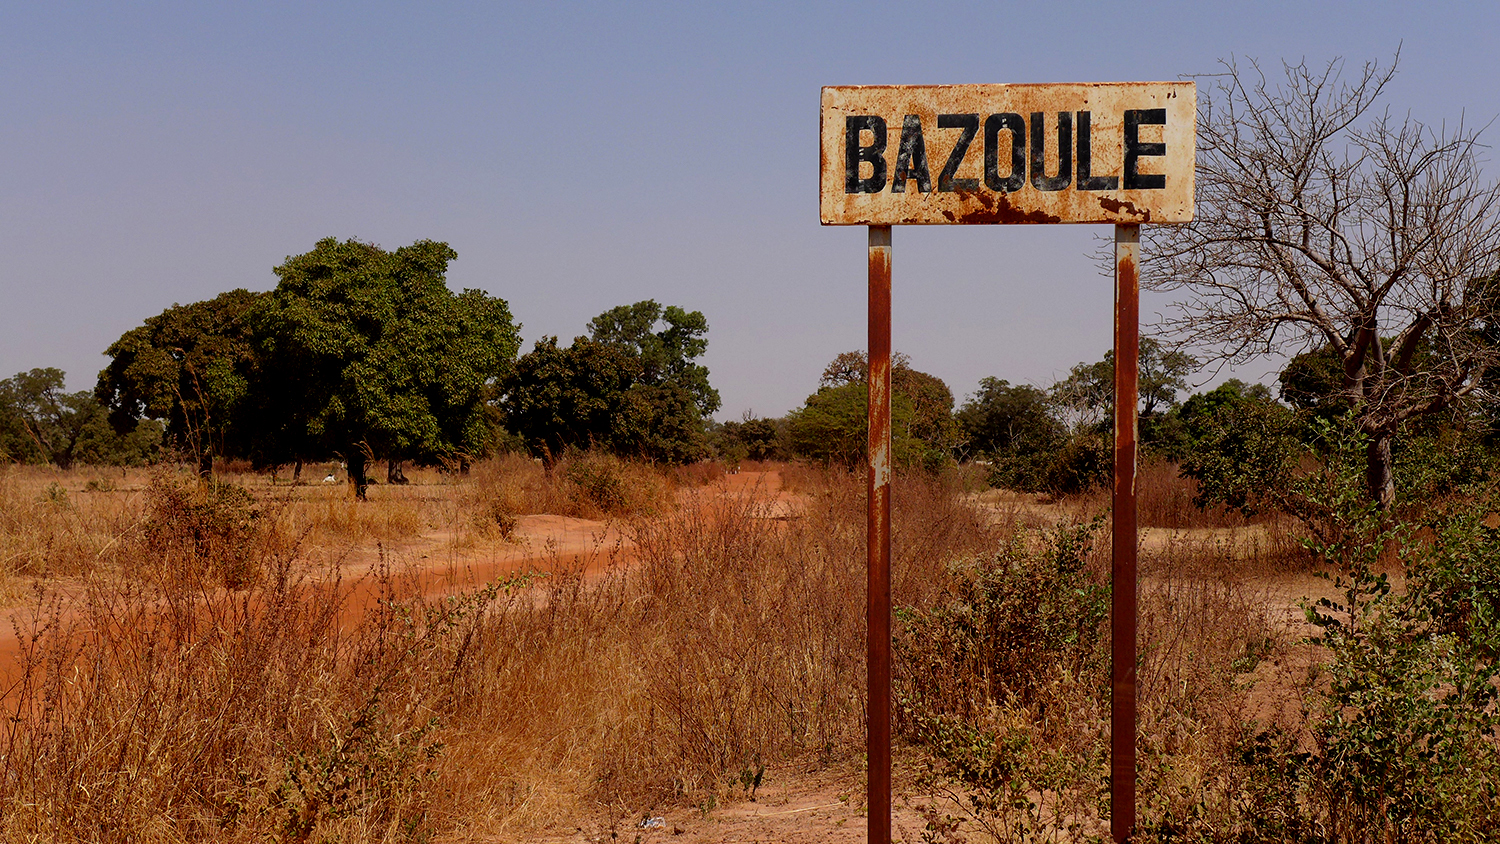 Bazoulé est situé à 40 kilomètres de Ouagadougou, dans une région très aride. 